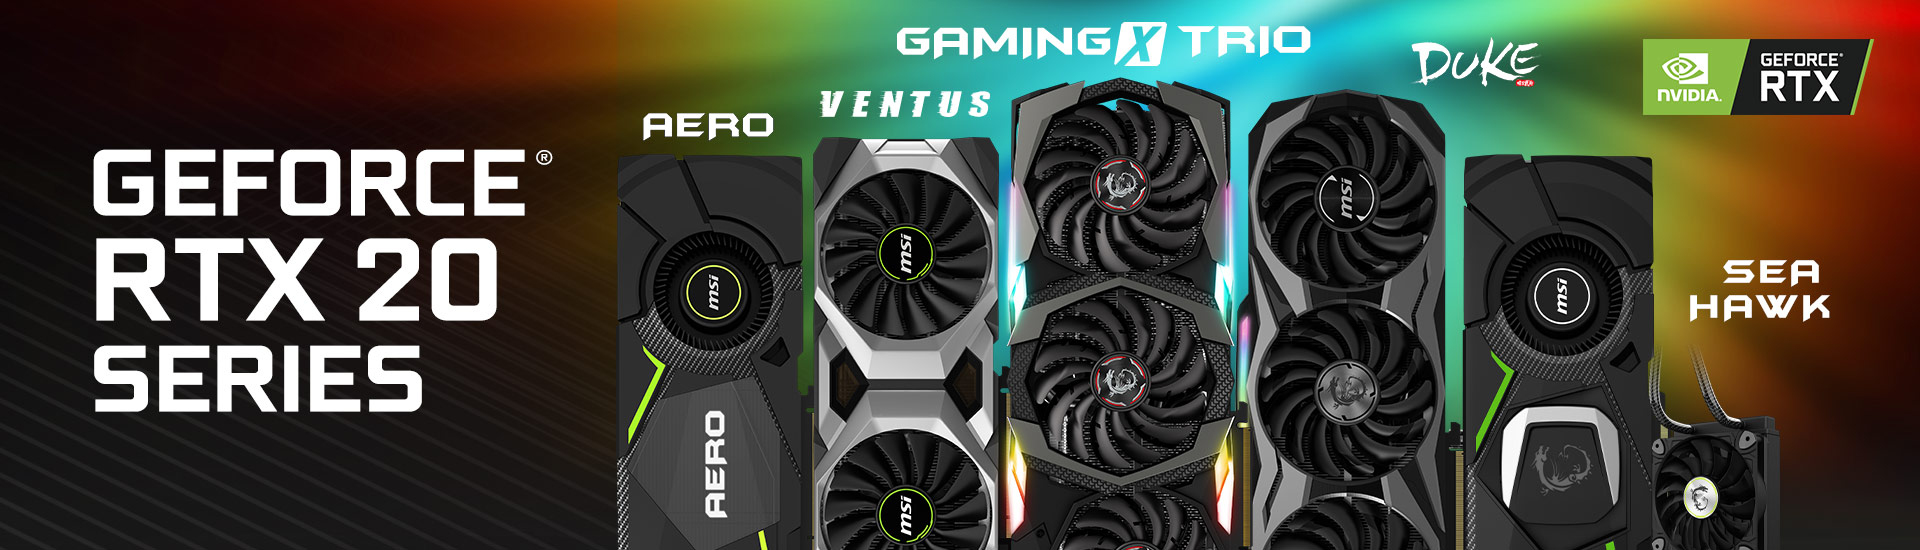 MSI giới thiệu loạt sản phẩm card đồ họa sử dụng GPU Nvidia Geforce® RTX mới